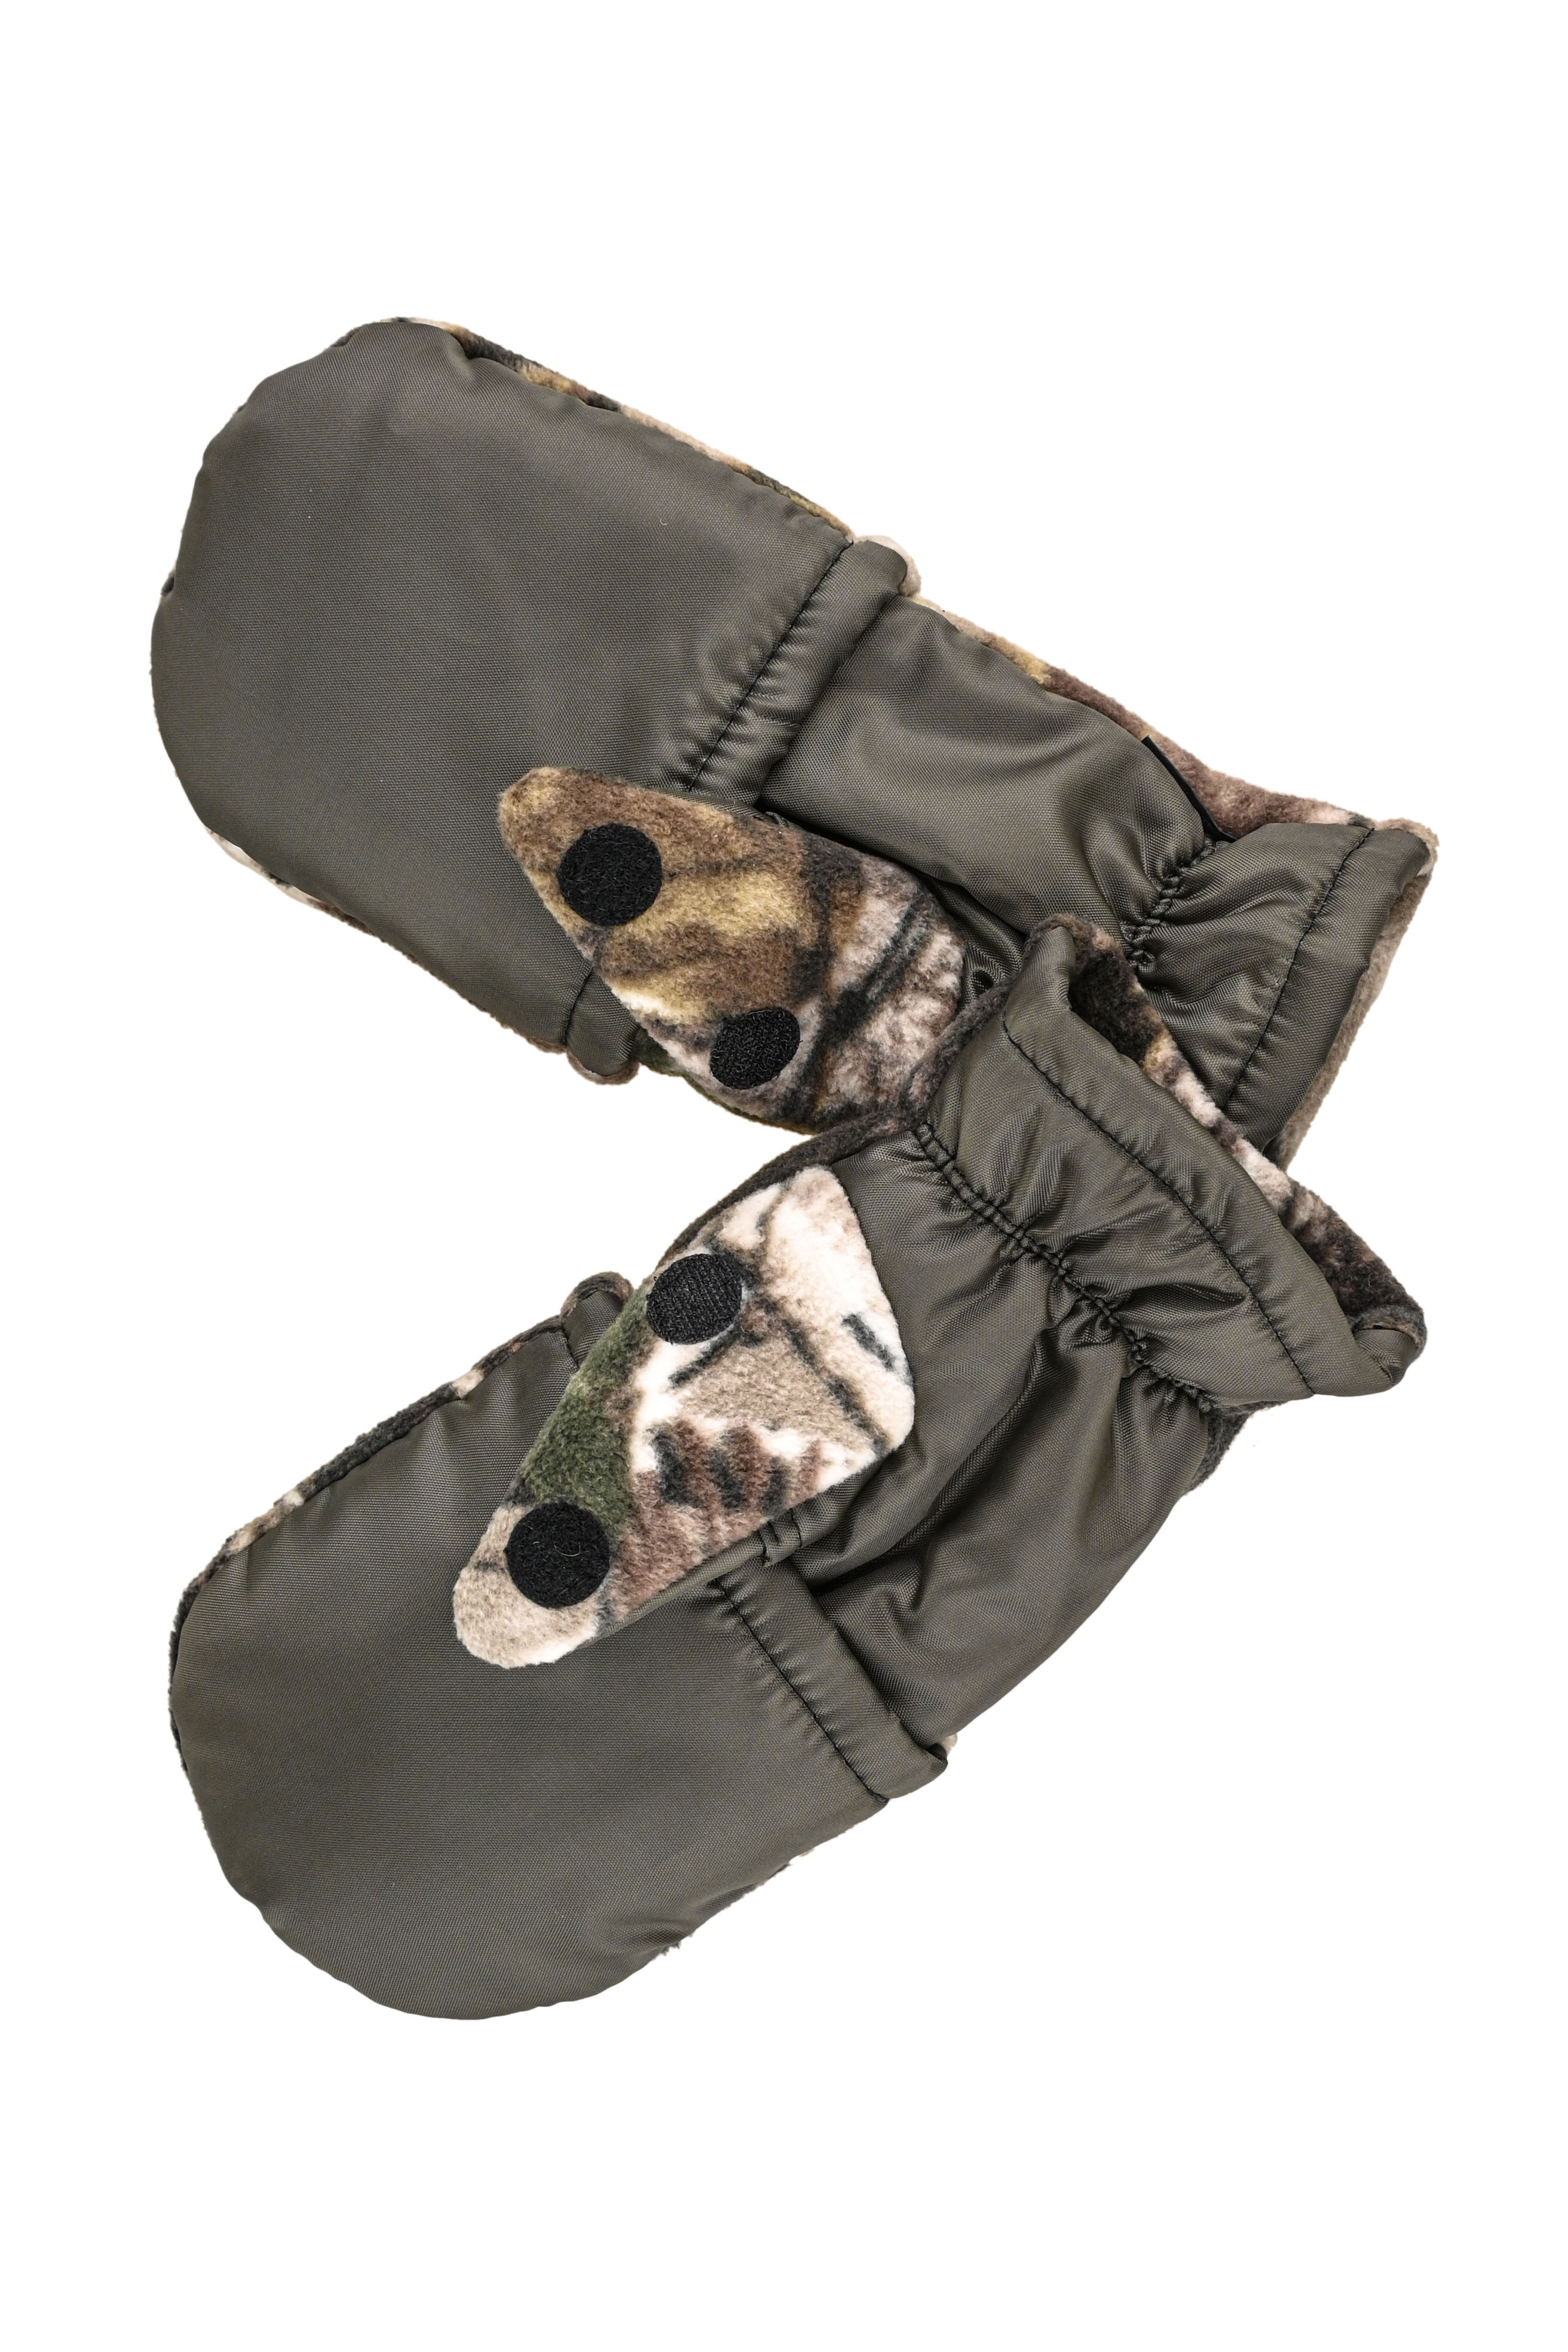 Перчатки Хольстер охотника-рыбака утепленные темный лес флис ( р.26) - фото 1